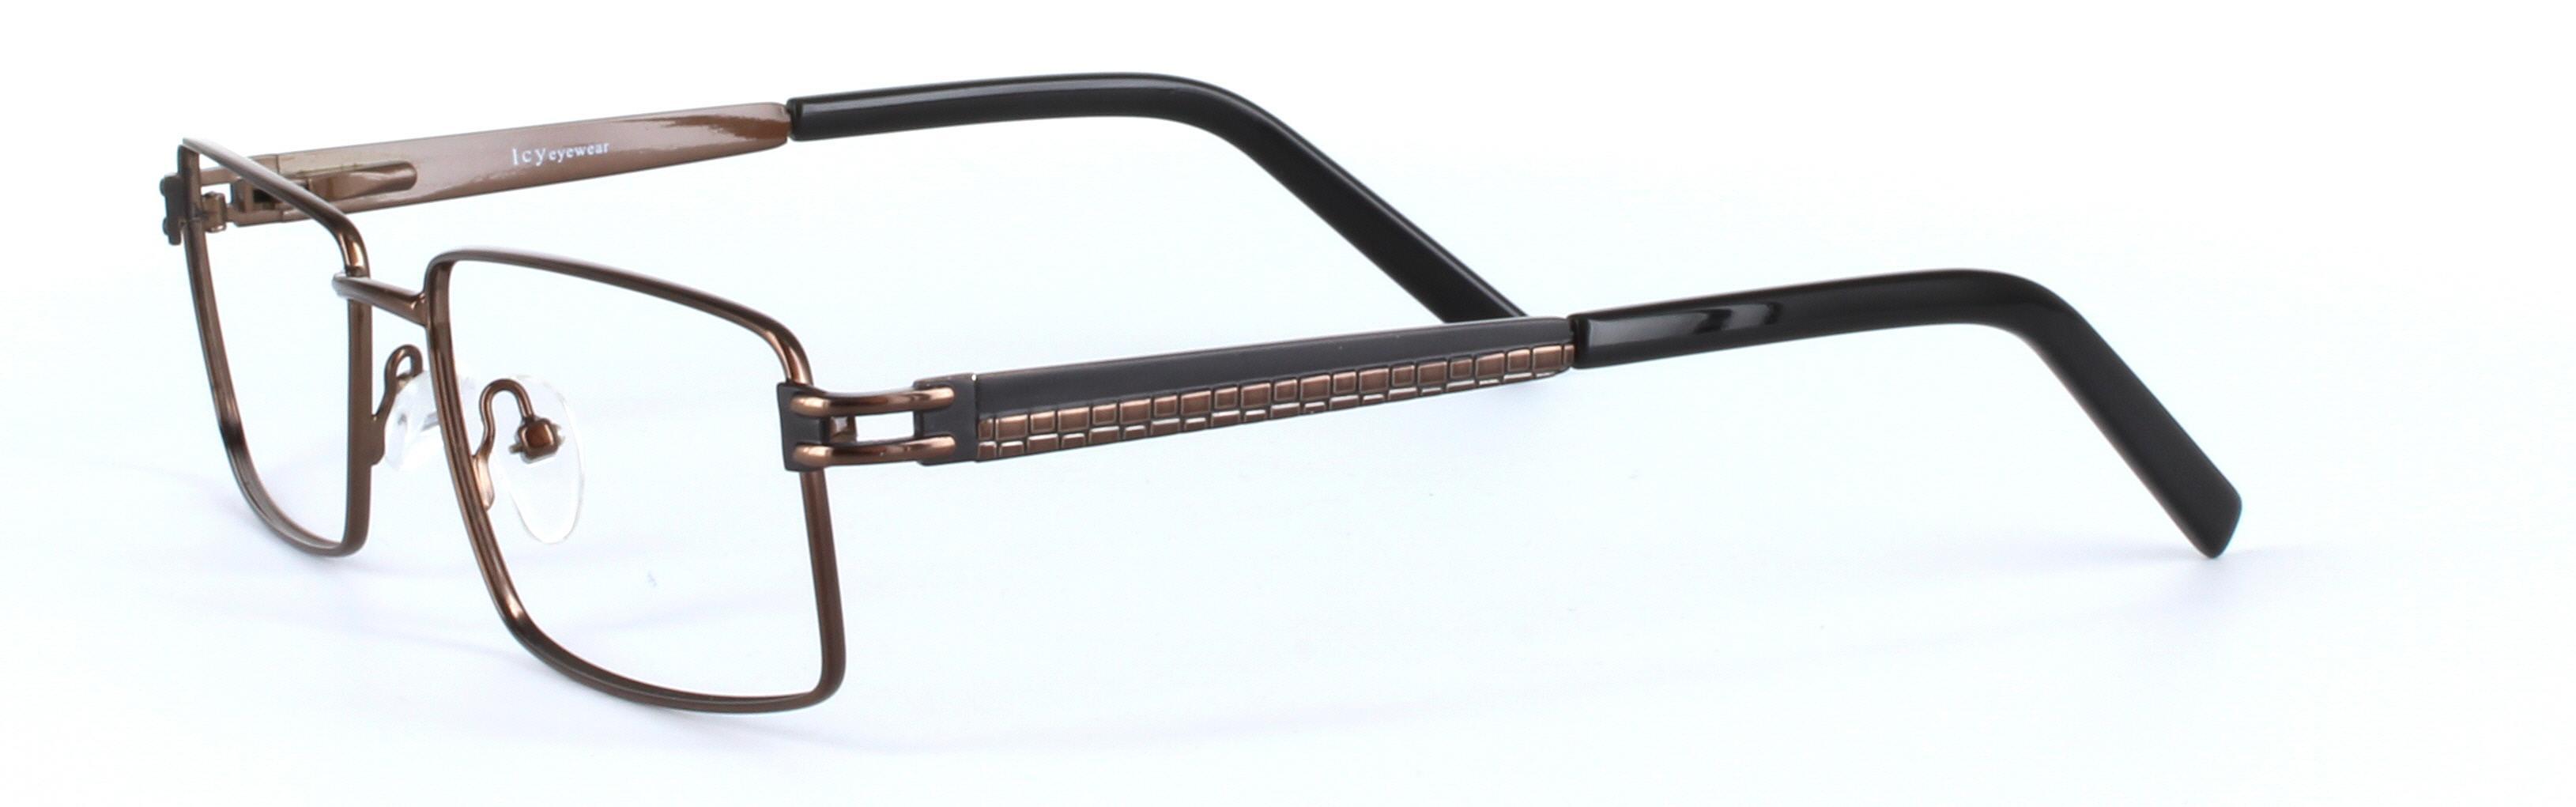 Brown Full Rim Rectangular Metal Glasses Varna - Image View 2